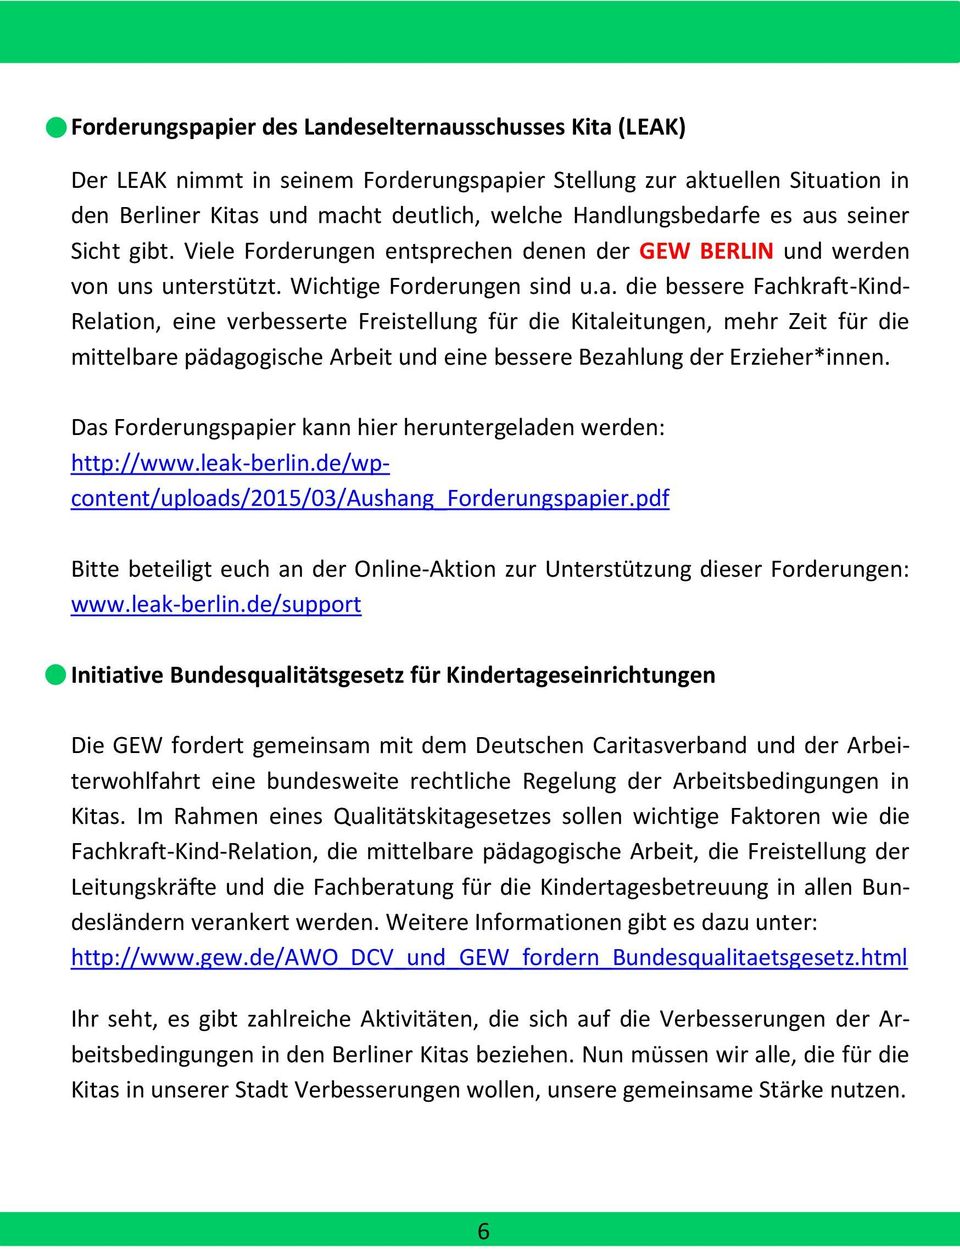 Das Forderungspapier kann hier heruntergeladen werden: http://www.leak-berlin.de/wpcontent/uploads/2015/03/aushang_forderungspapier.